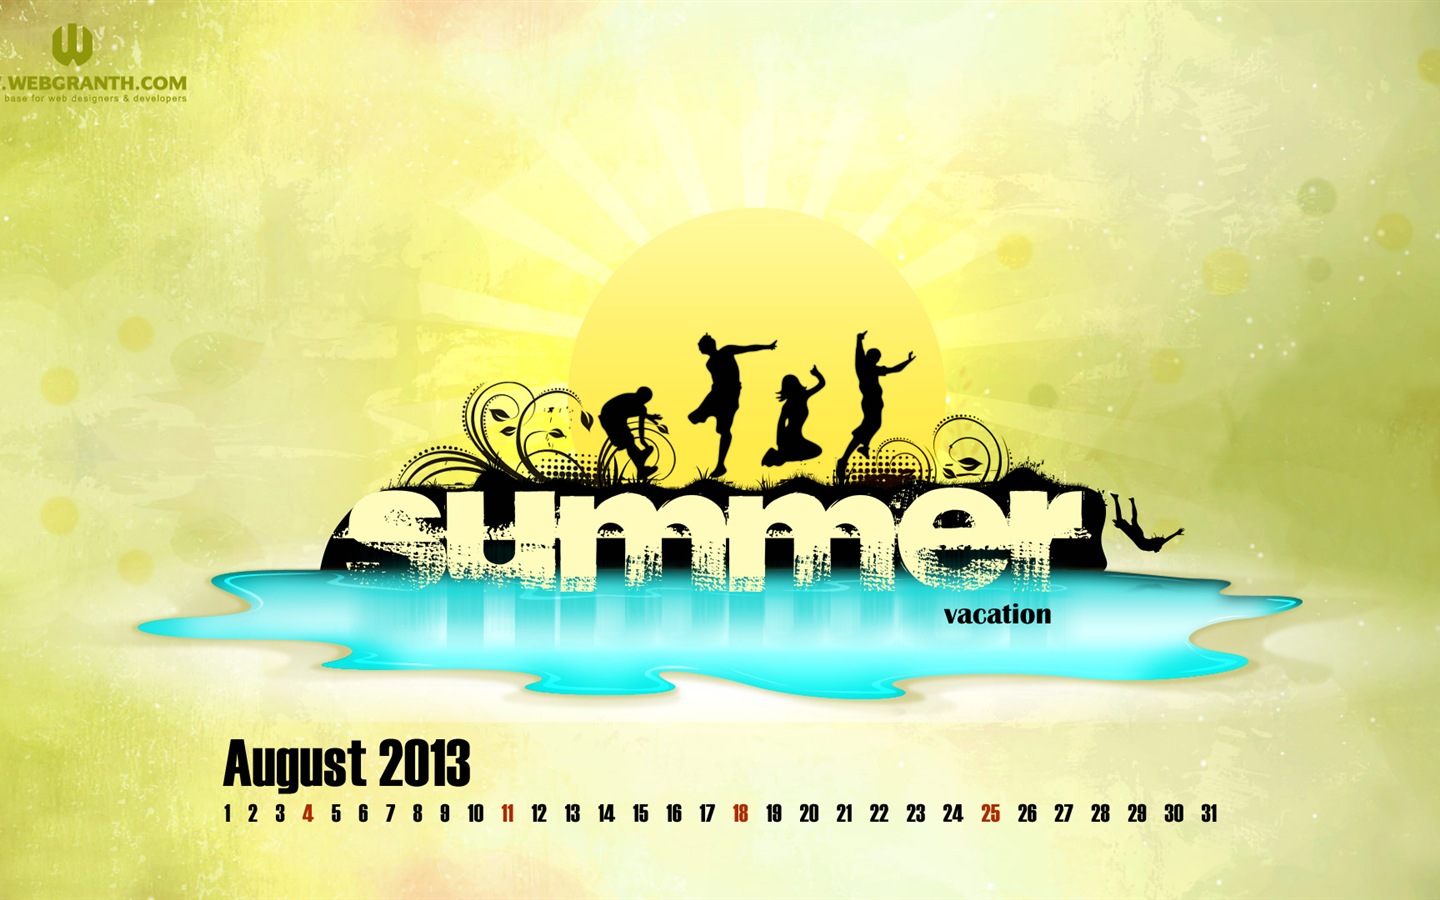 Август 2013 календарь обои (2) #20 - 1440x900